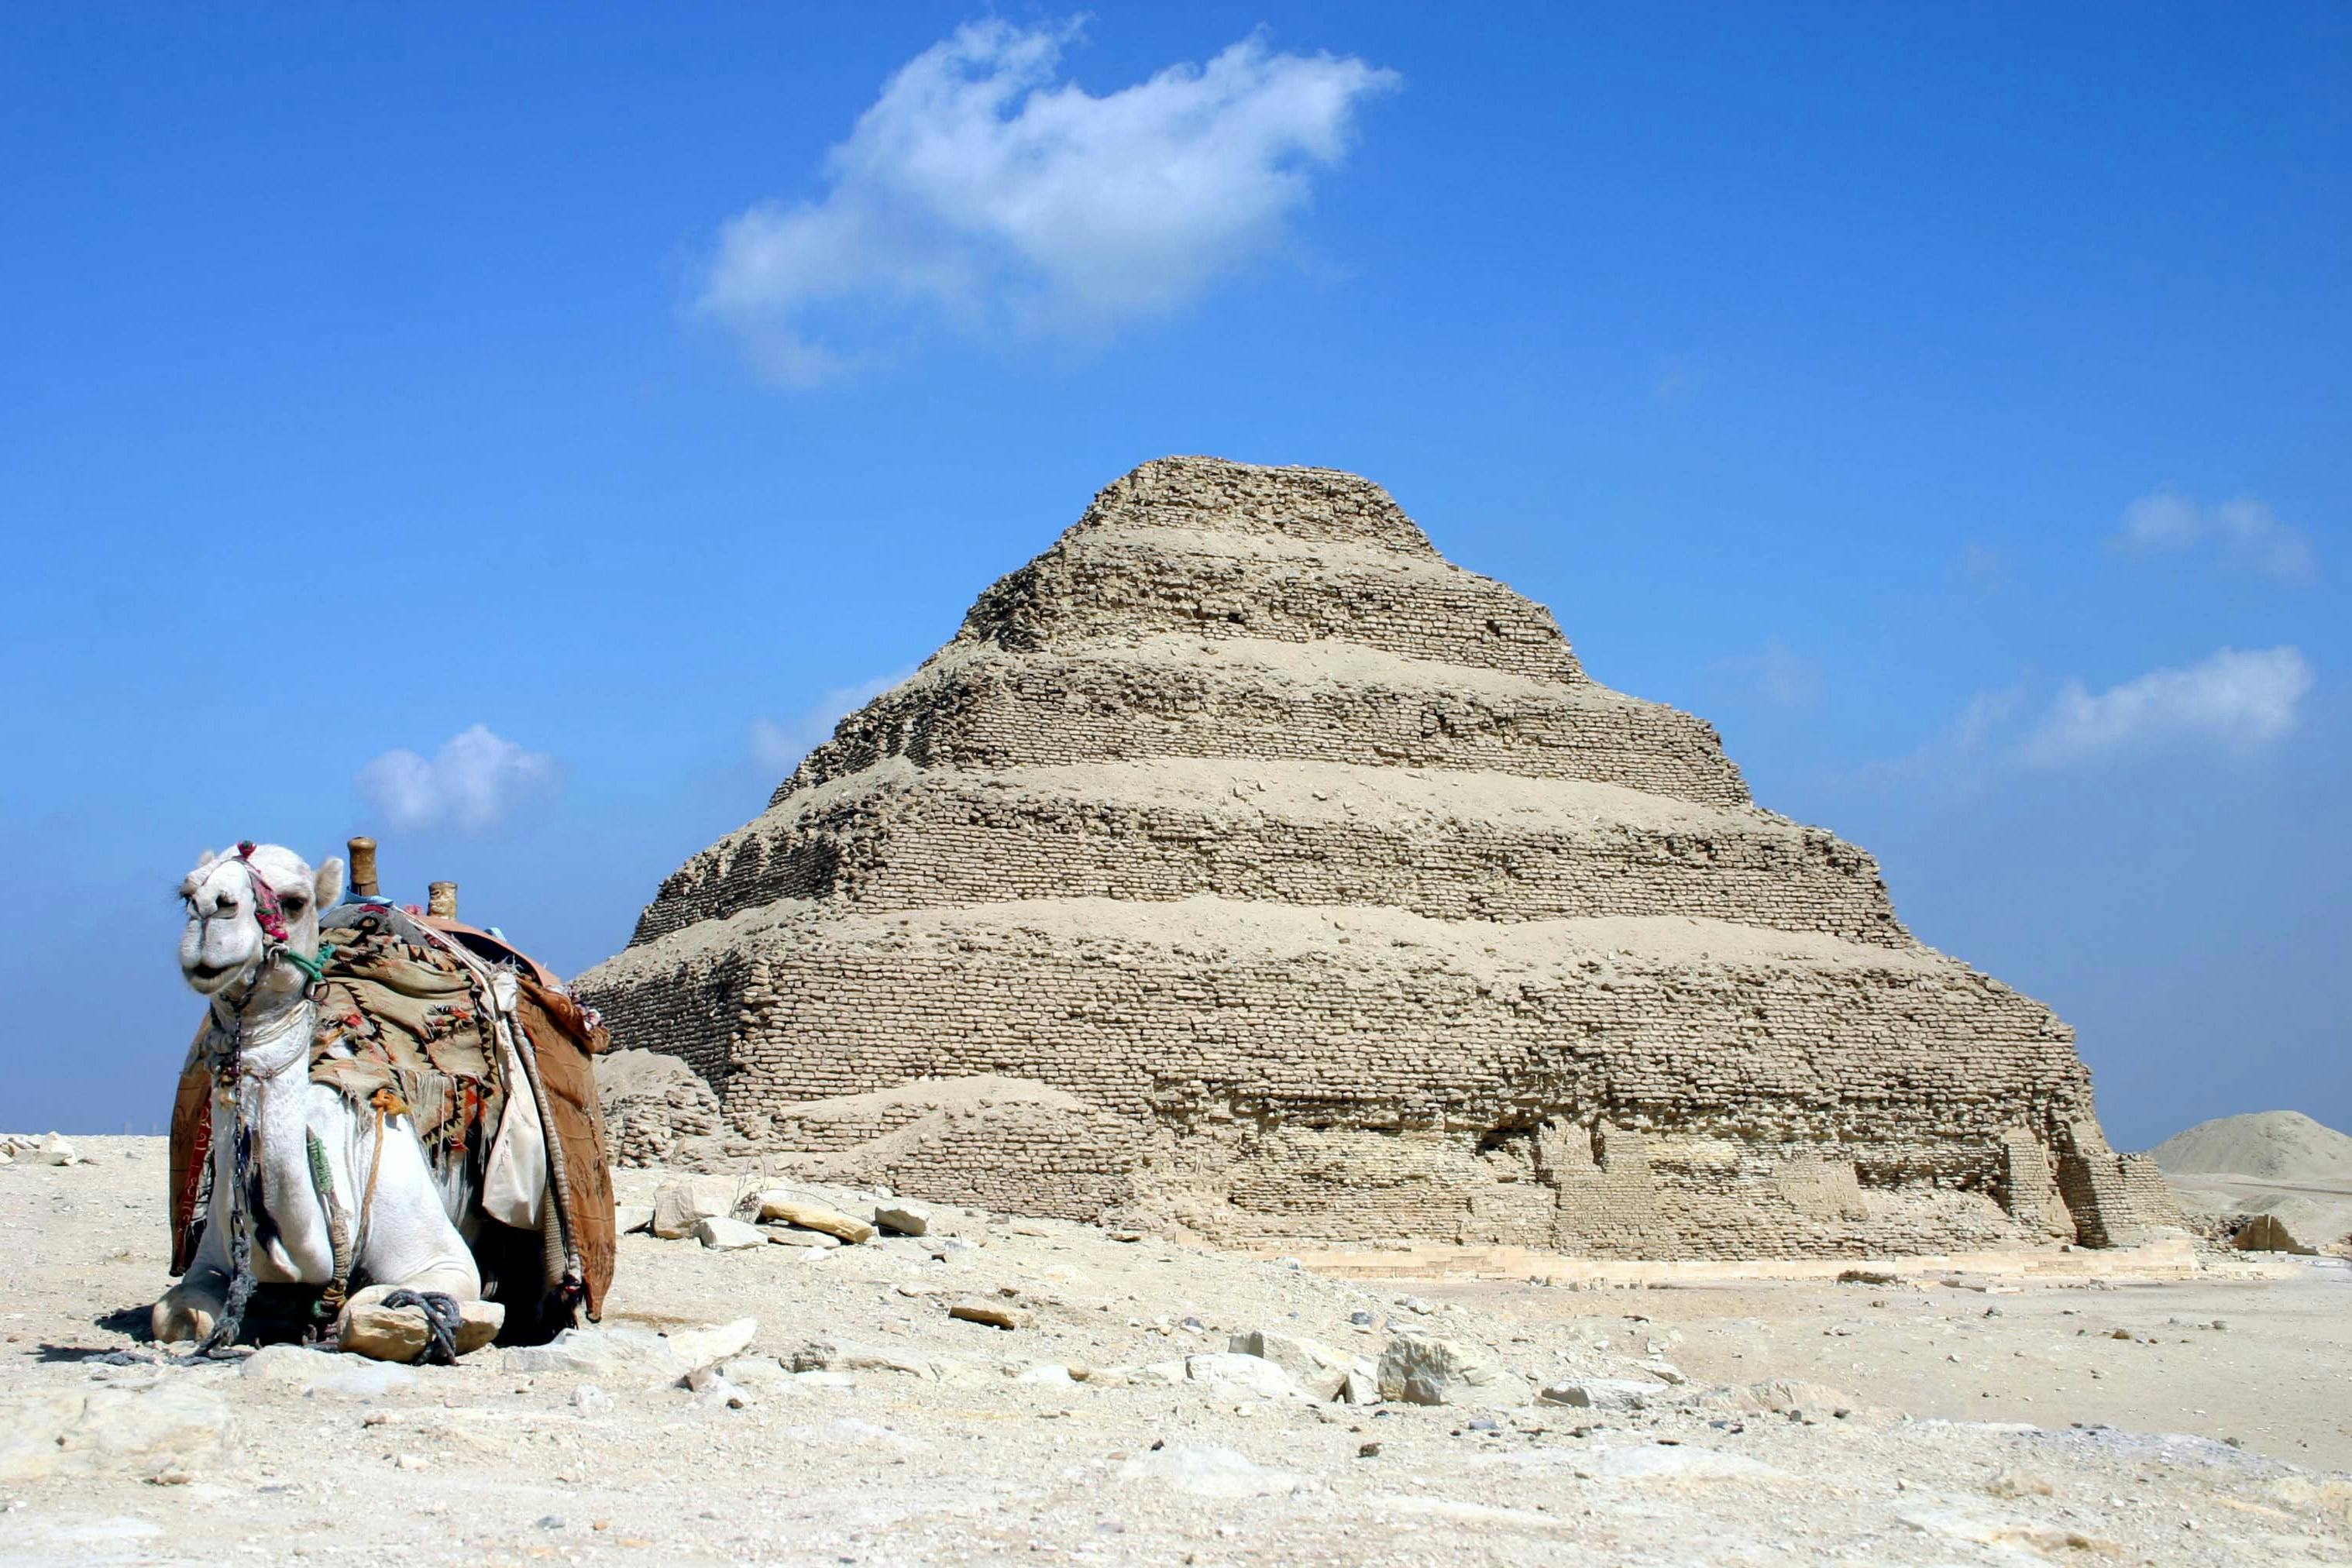 Excursión de día completo a Memphis, Sakkara, las pirámides de Giza y la Esfinge desde El Cairo